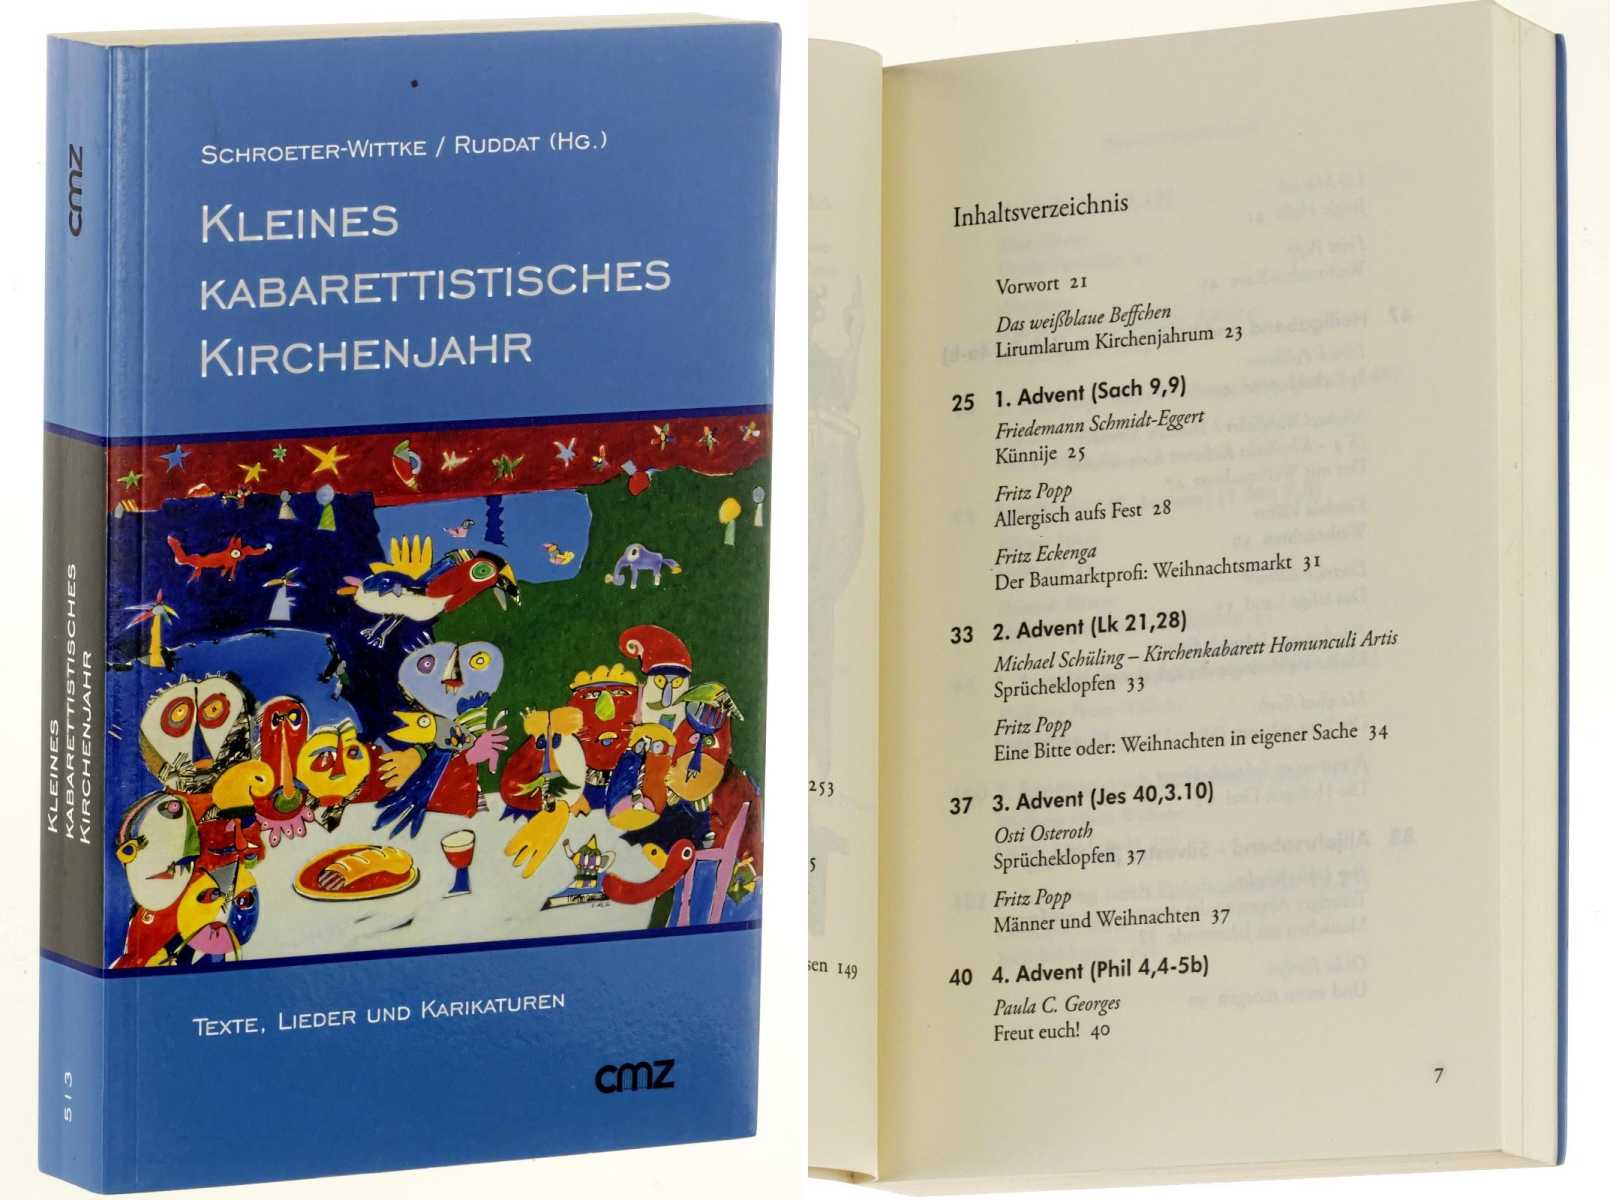 Schroeter-Wittke, Harald/ Günter Ruddat (Hrsg.):  Kleines kabarettistisches Kirchenjahr. Texte, Lieder und Karikaturen. 